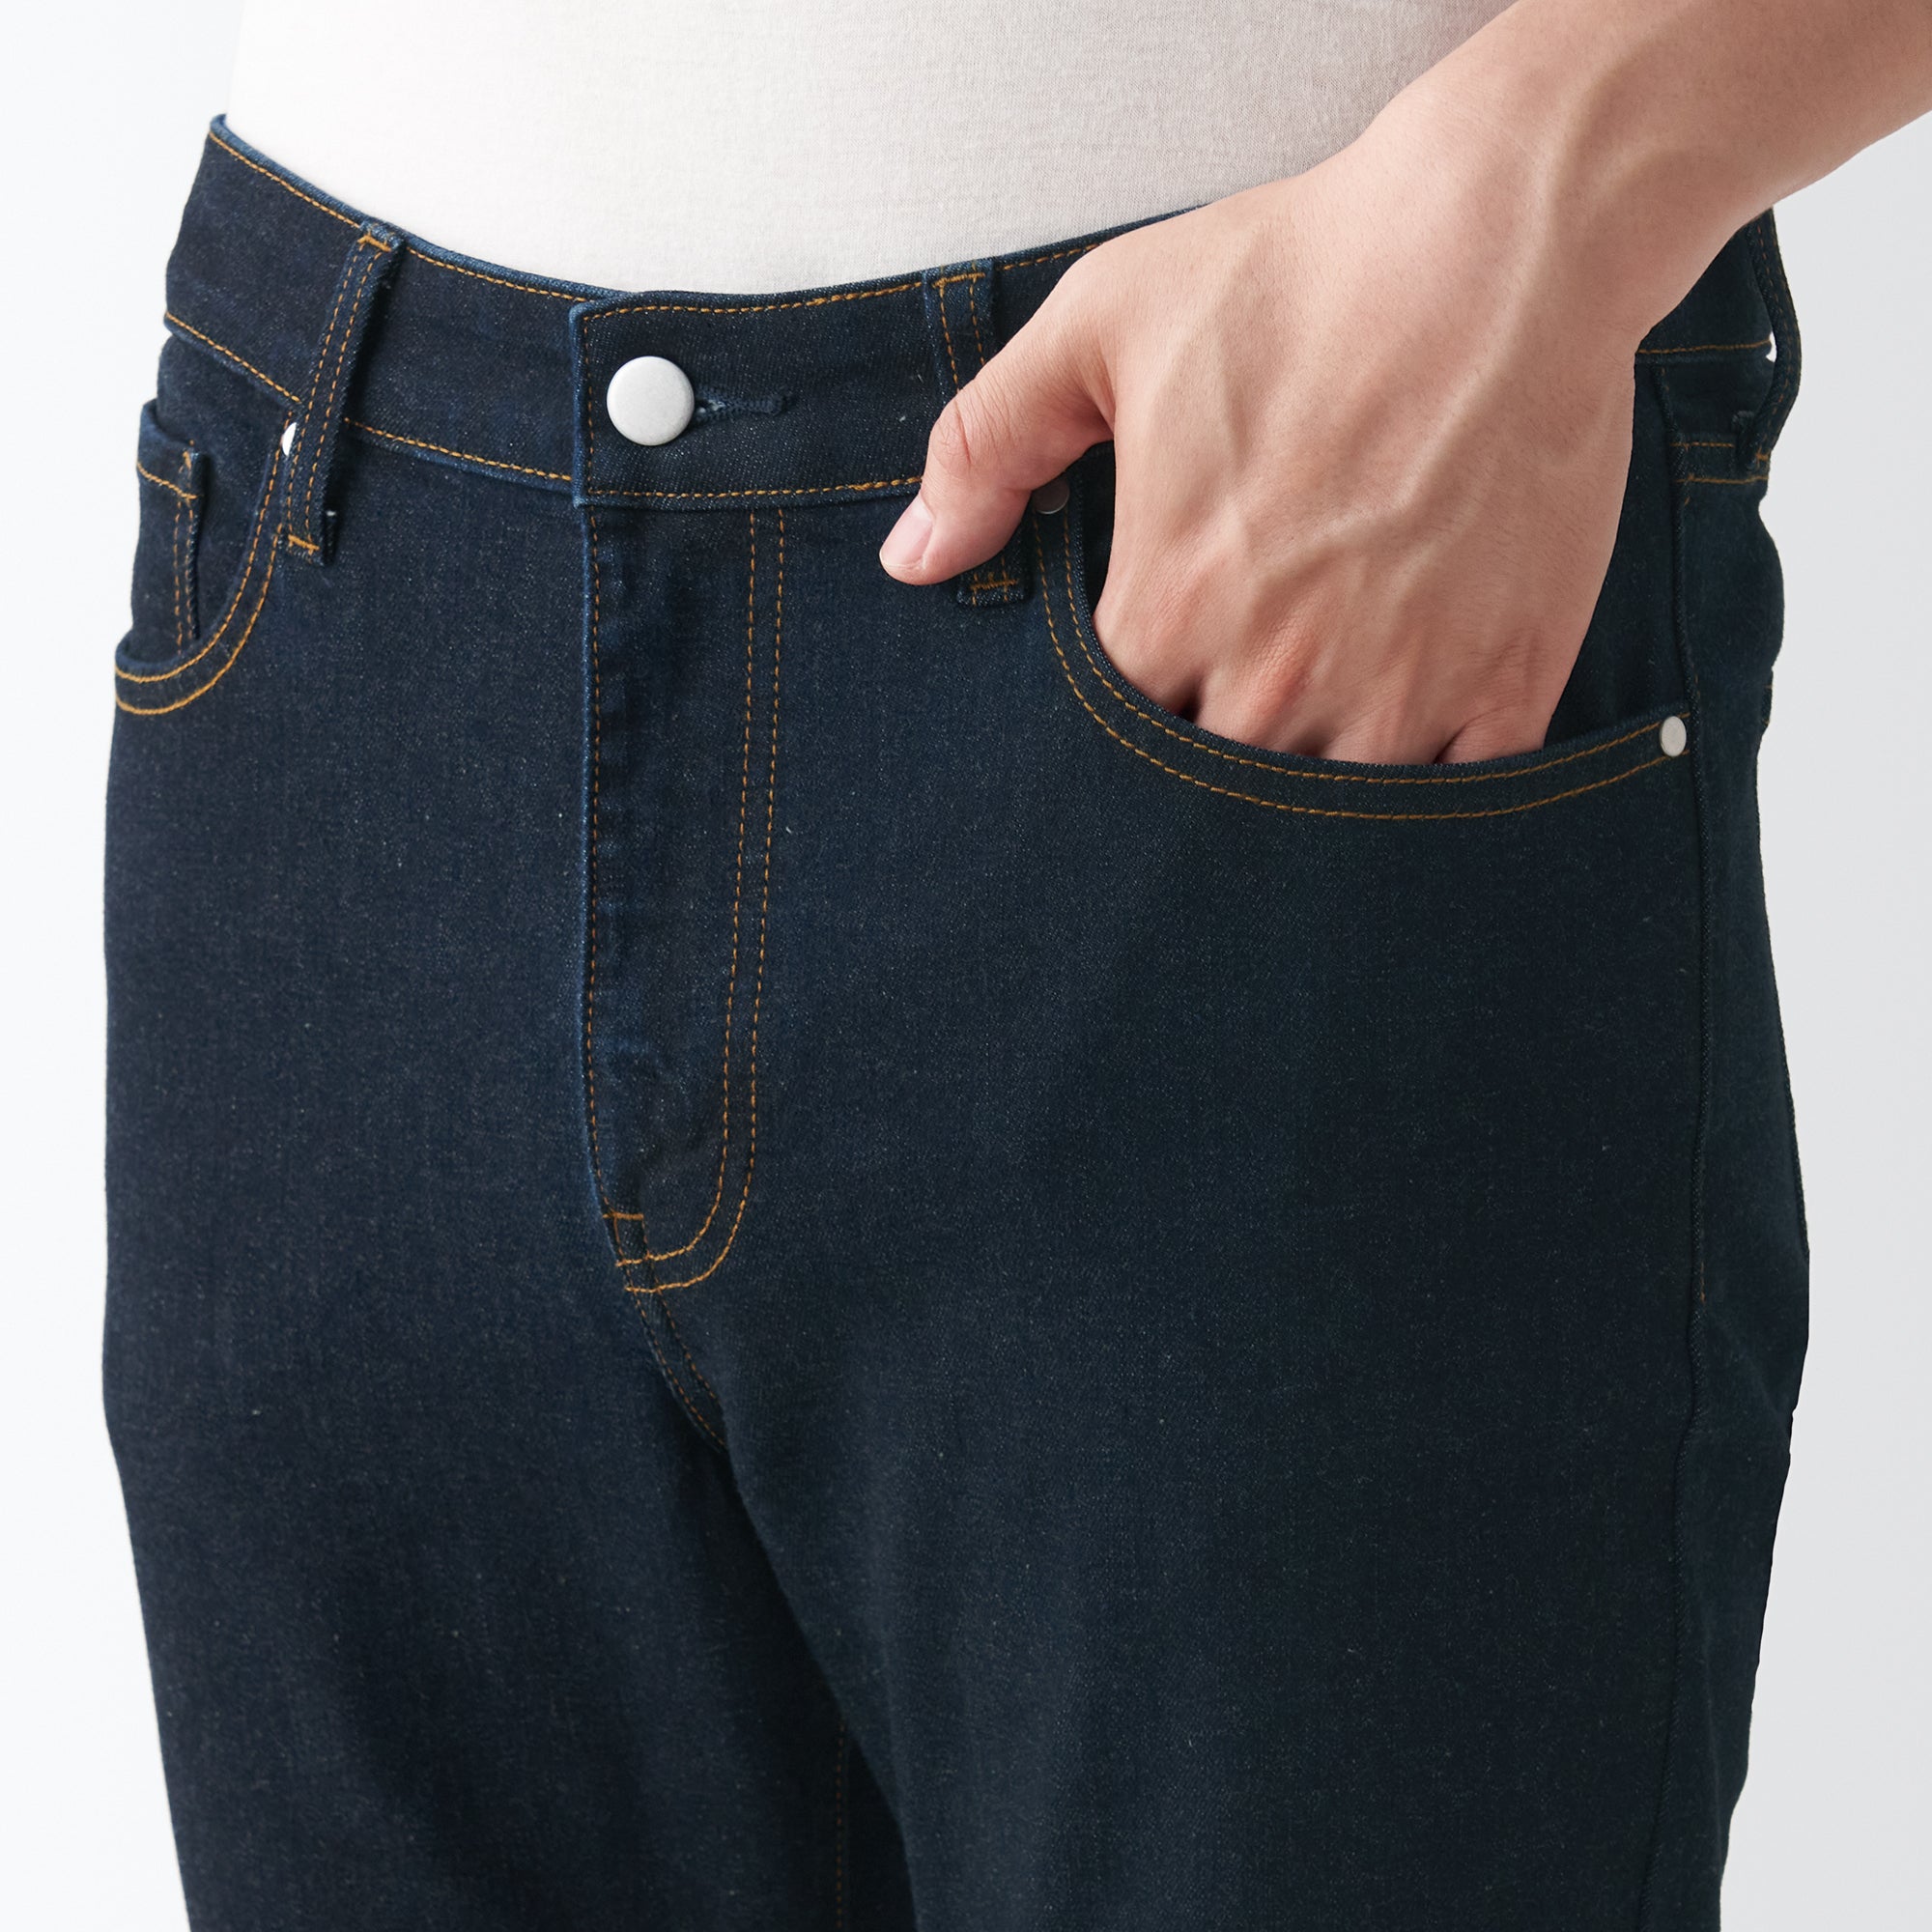 Men's Super Stretch Denim Skinny Pants Dark Navy (L32inch / 82cm)